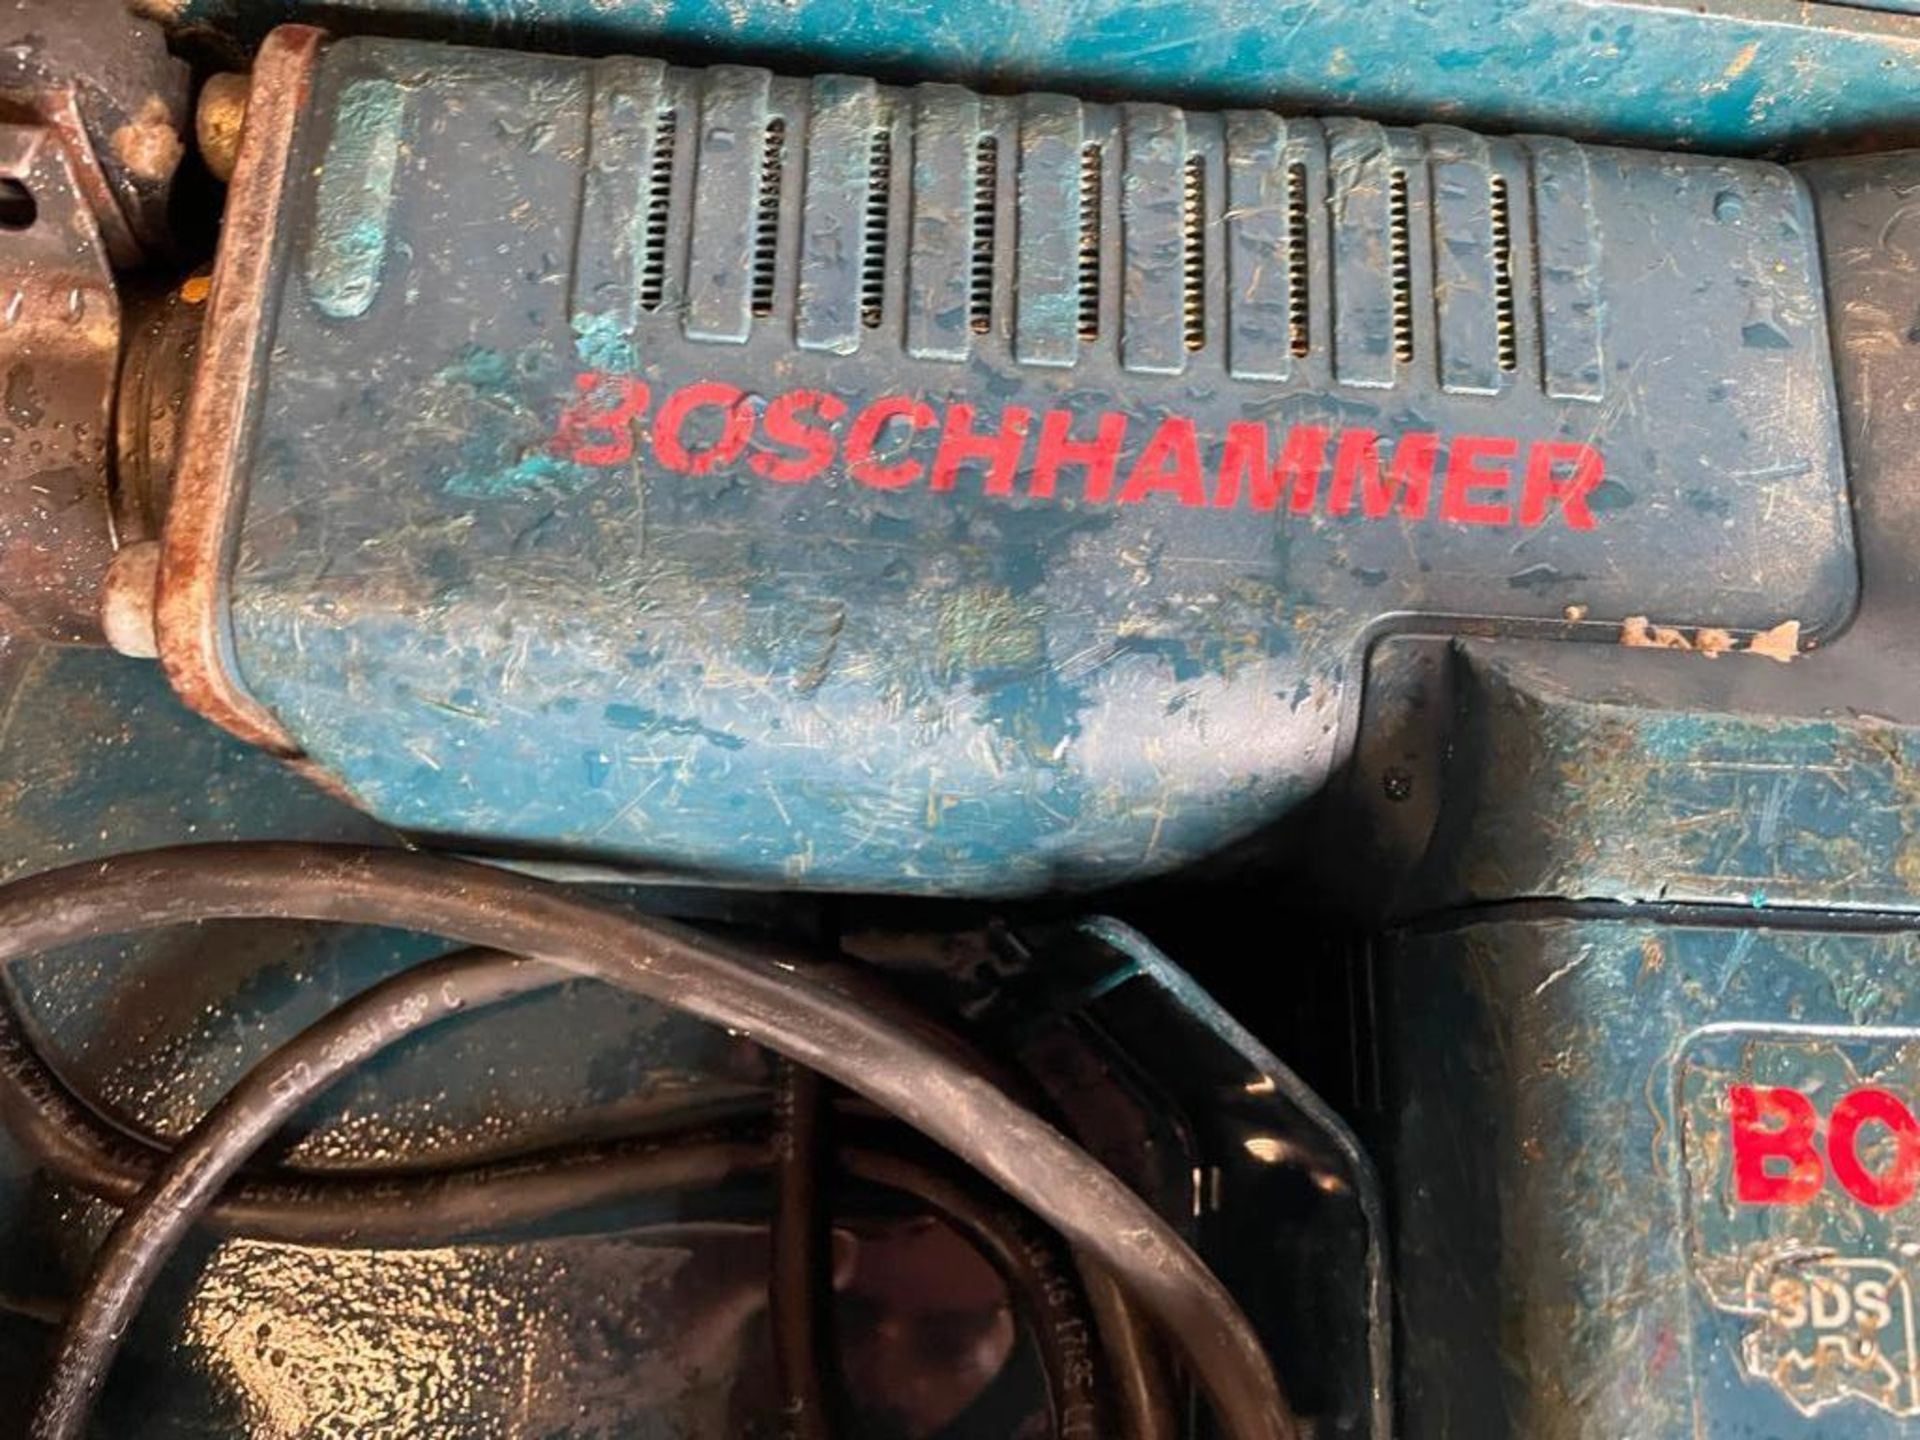 Bosch 11316EVS SDS Demolition Hammer, 120V. Located in Hazelwood, MO - Image 3 of 5